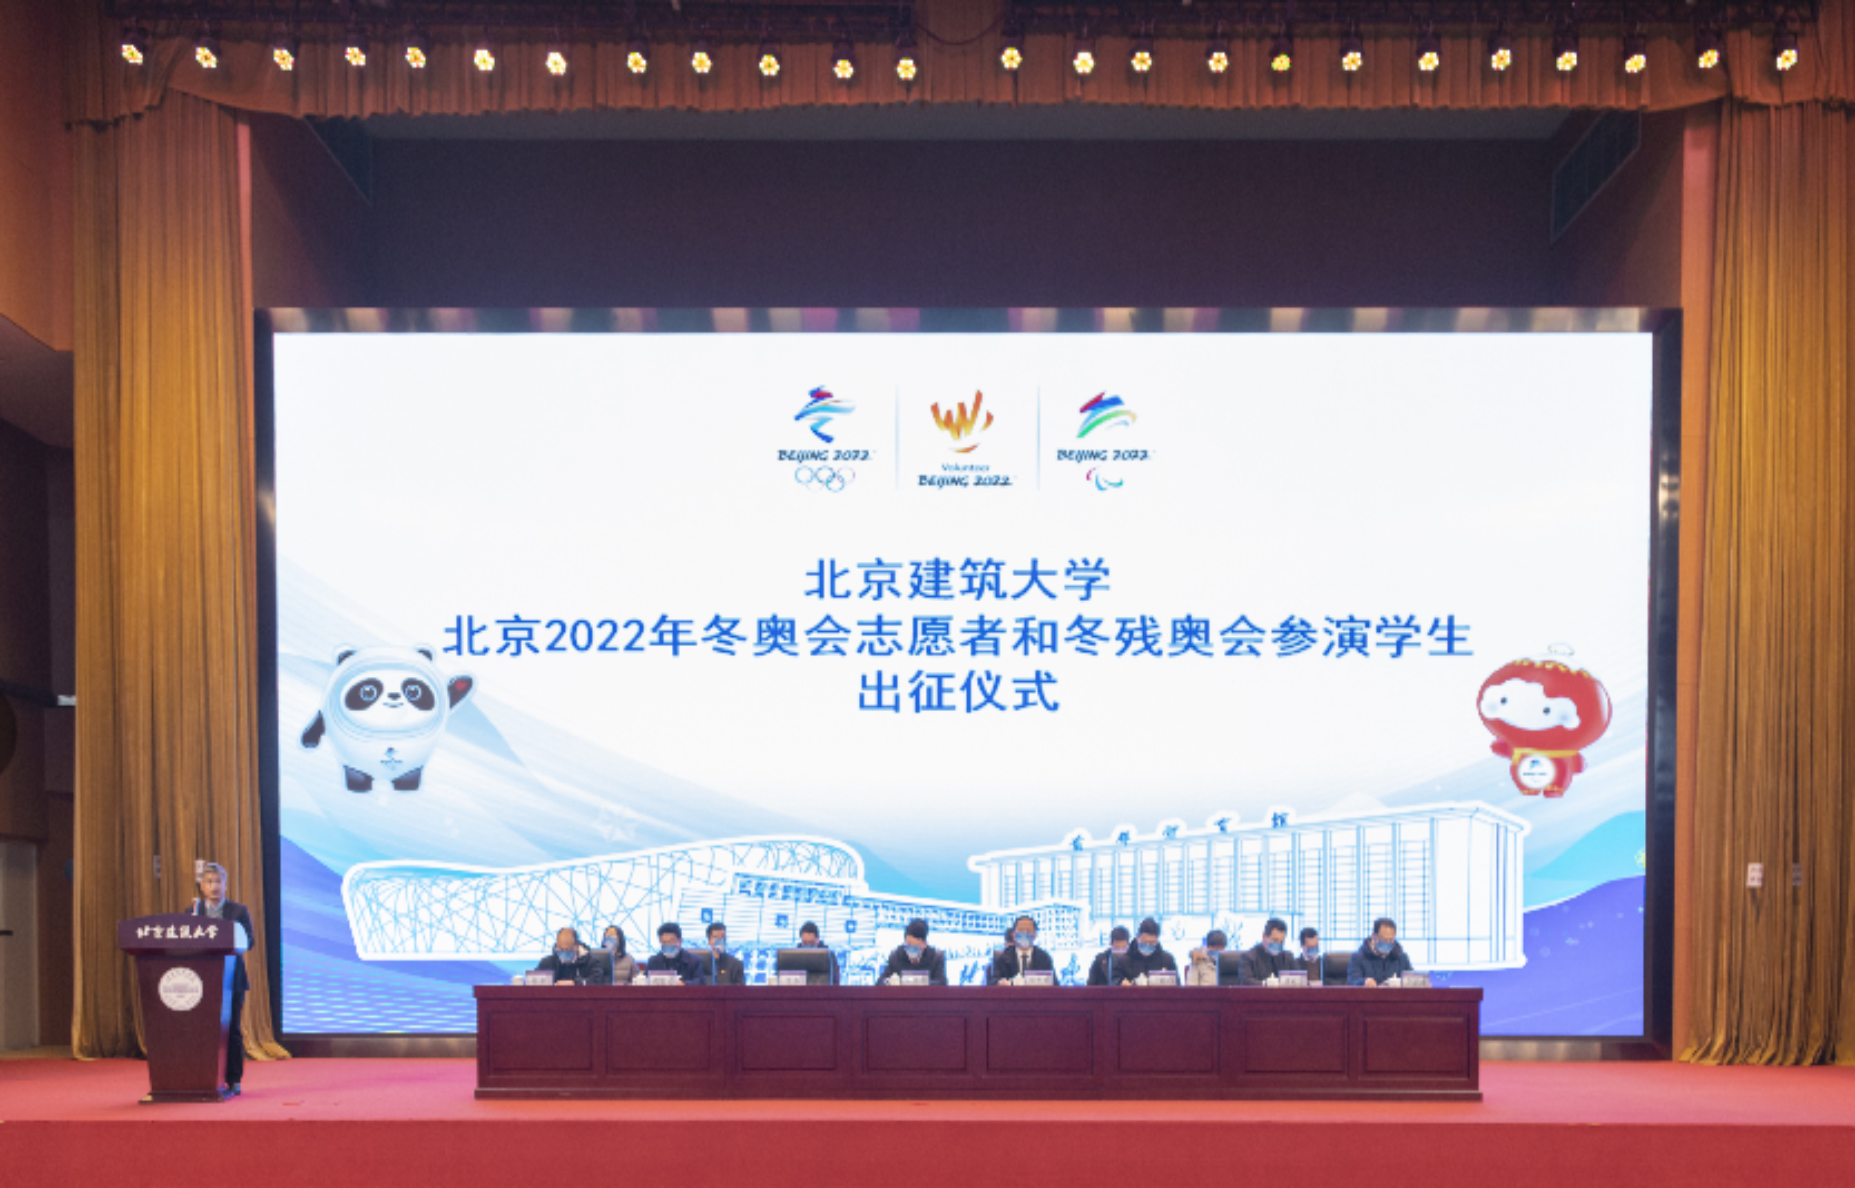 学校举行北京2022年冬奥会志愿者和冬残奥会参演学生出征仪式